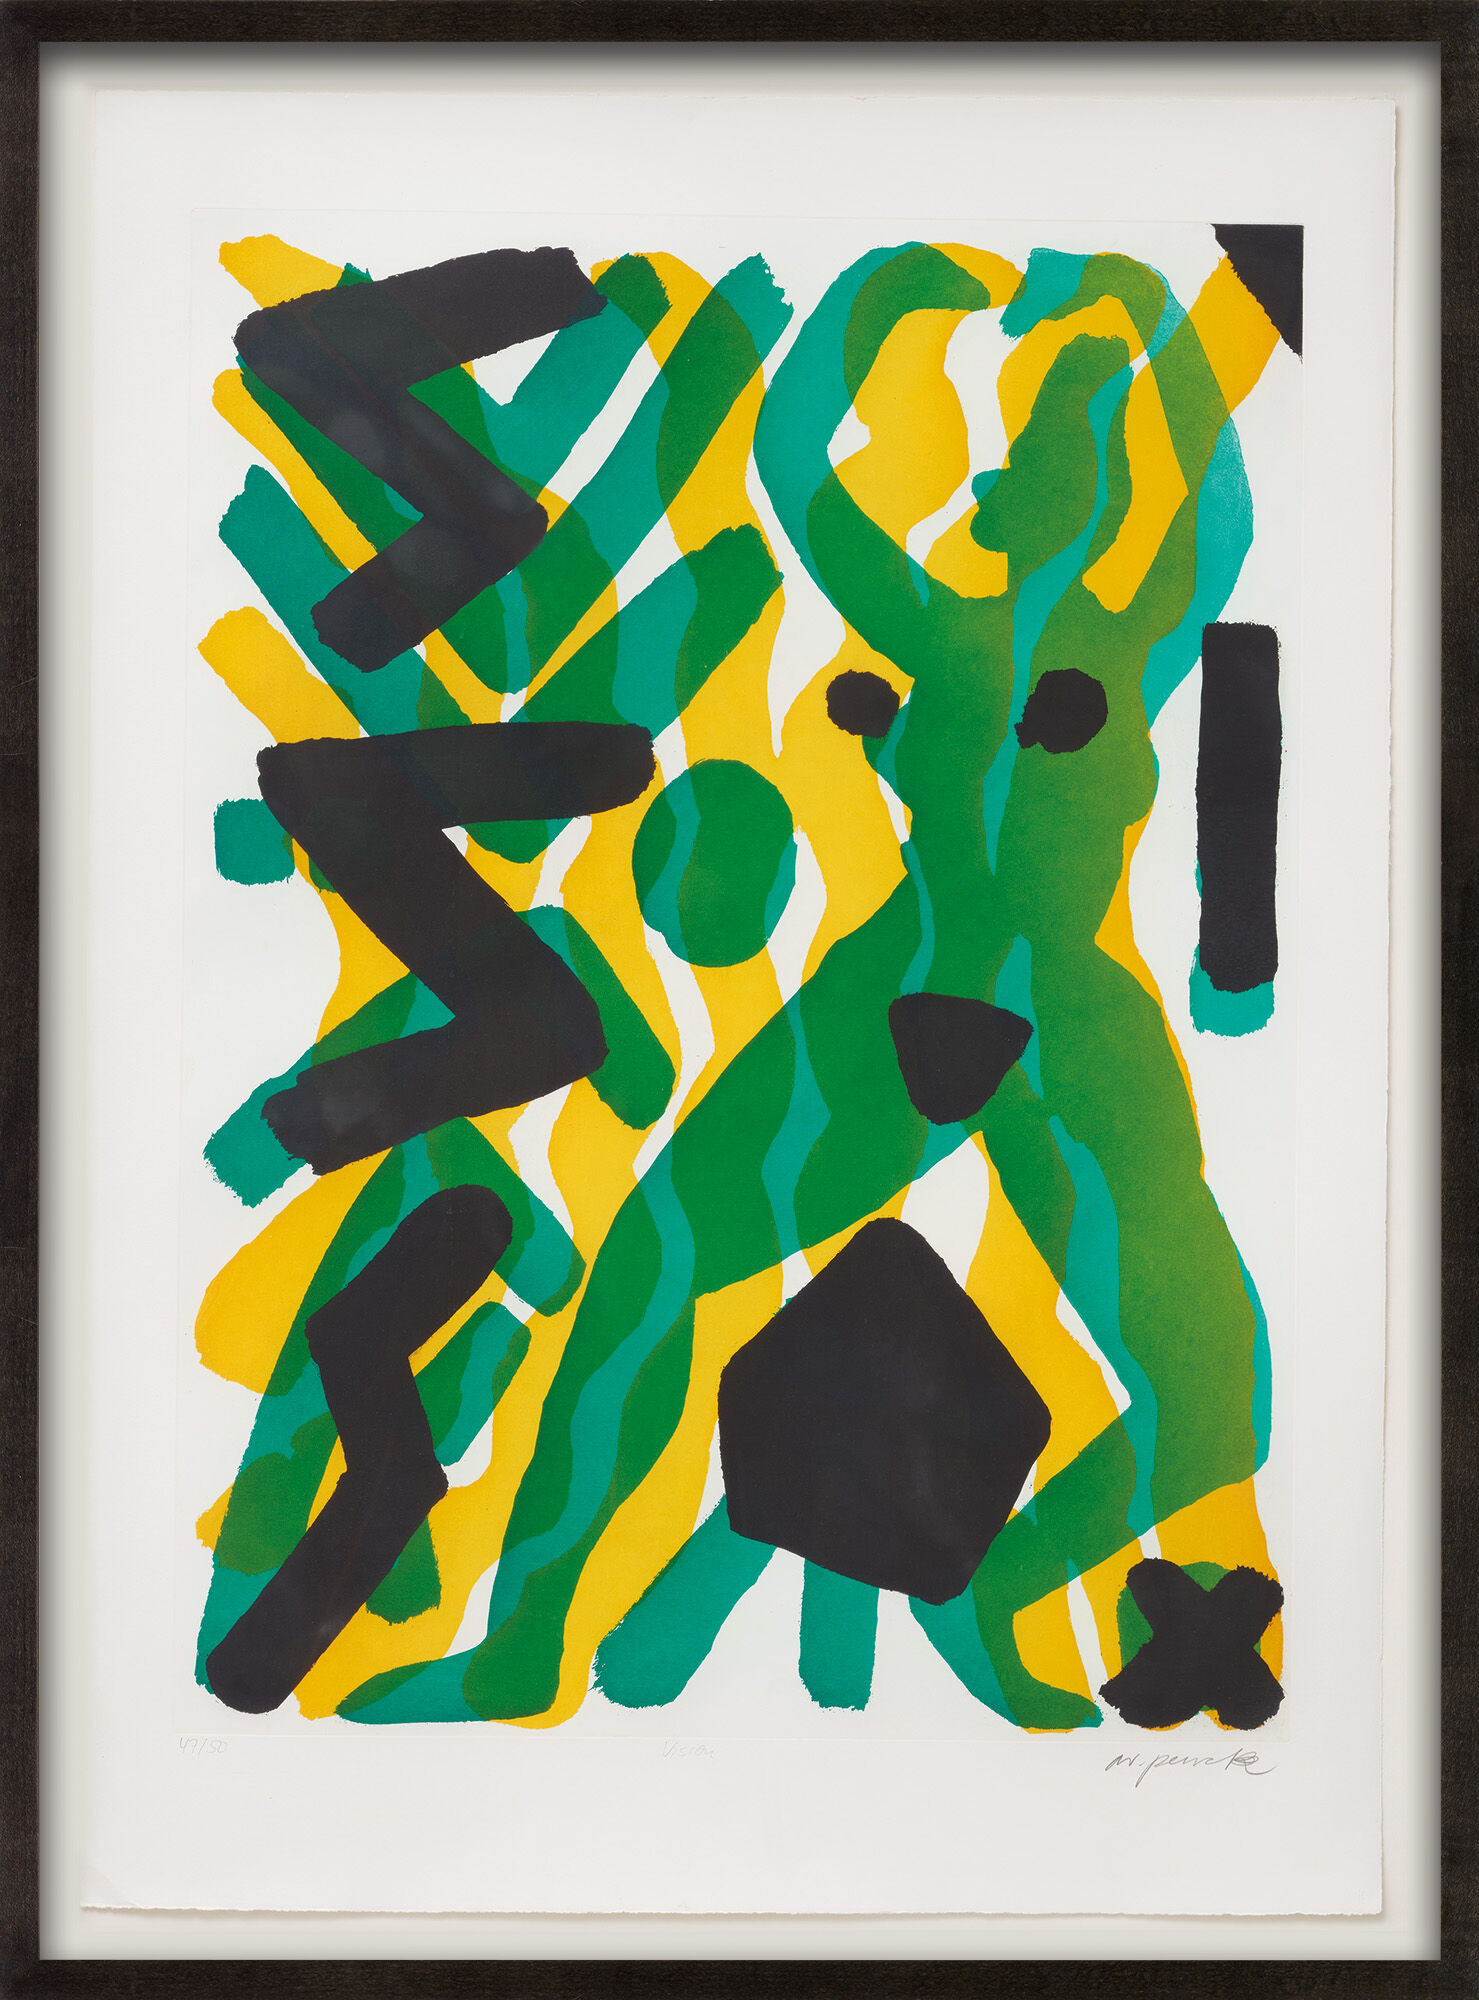 Bild "Serie III Vision (Grün-Gelb)" (1990/91) von A. R. Penck